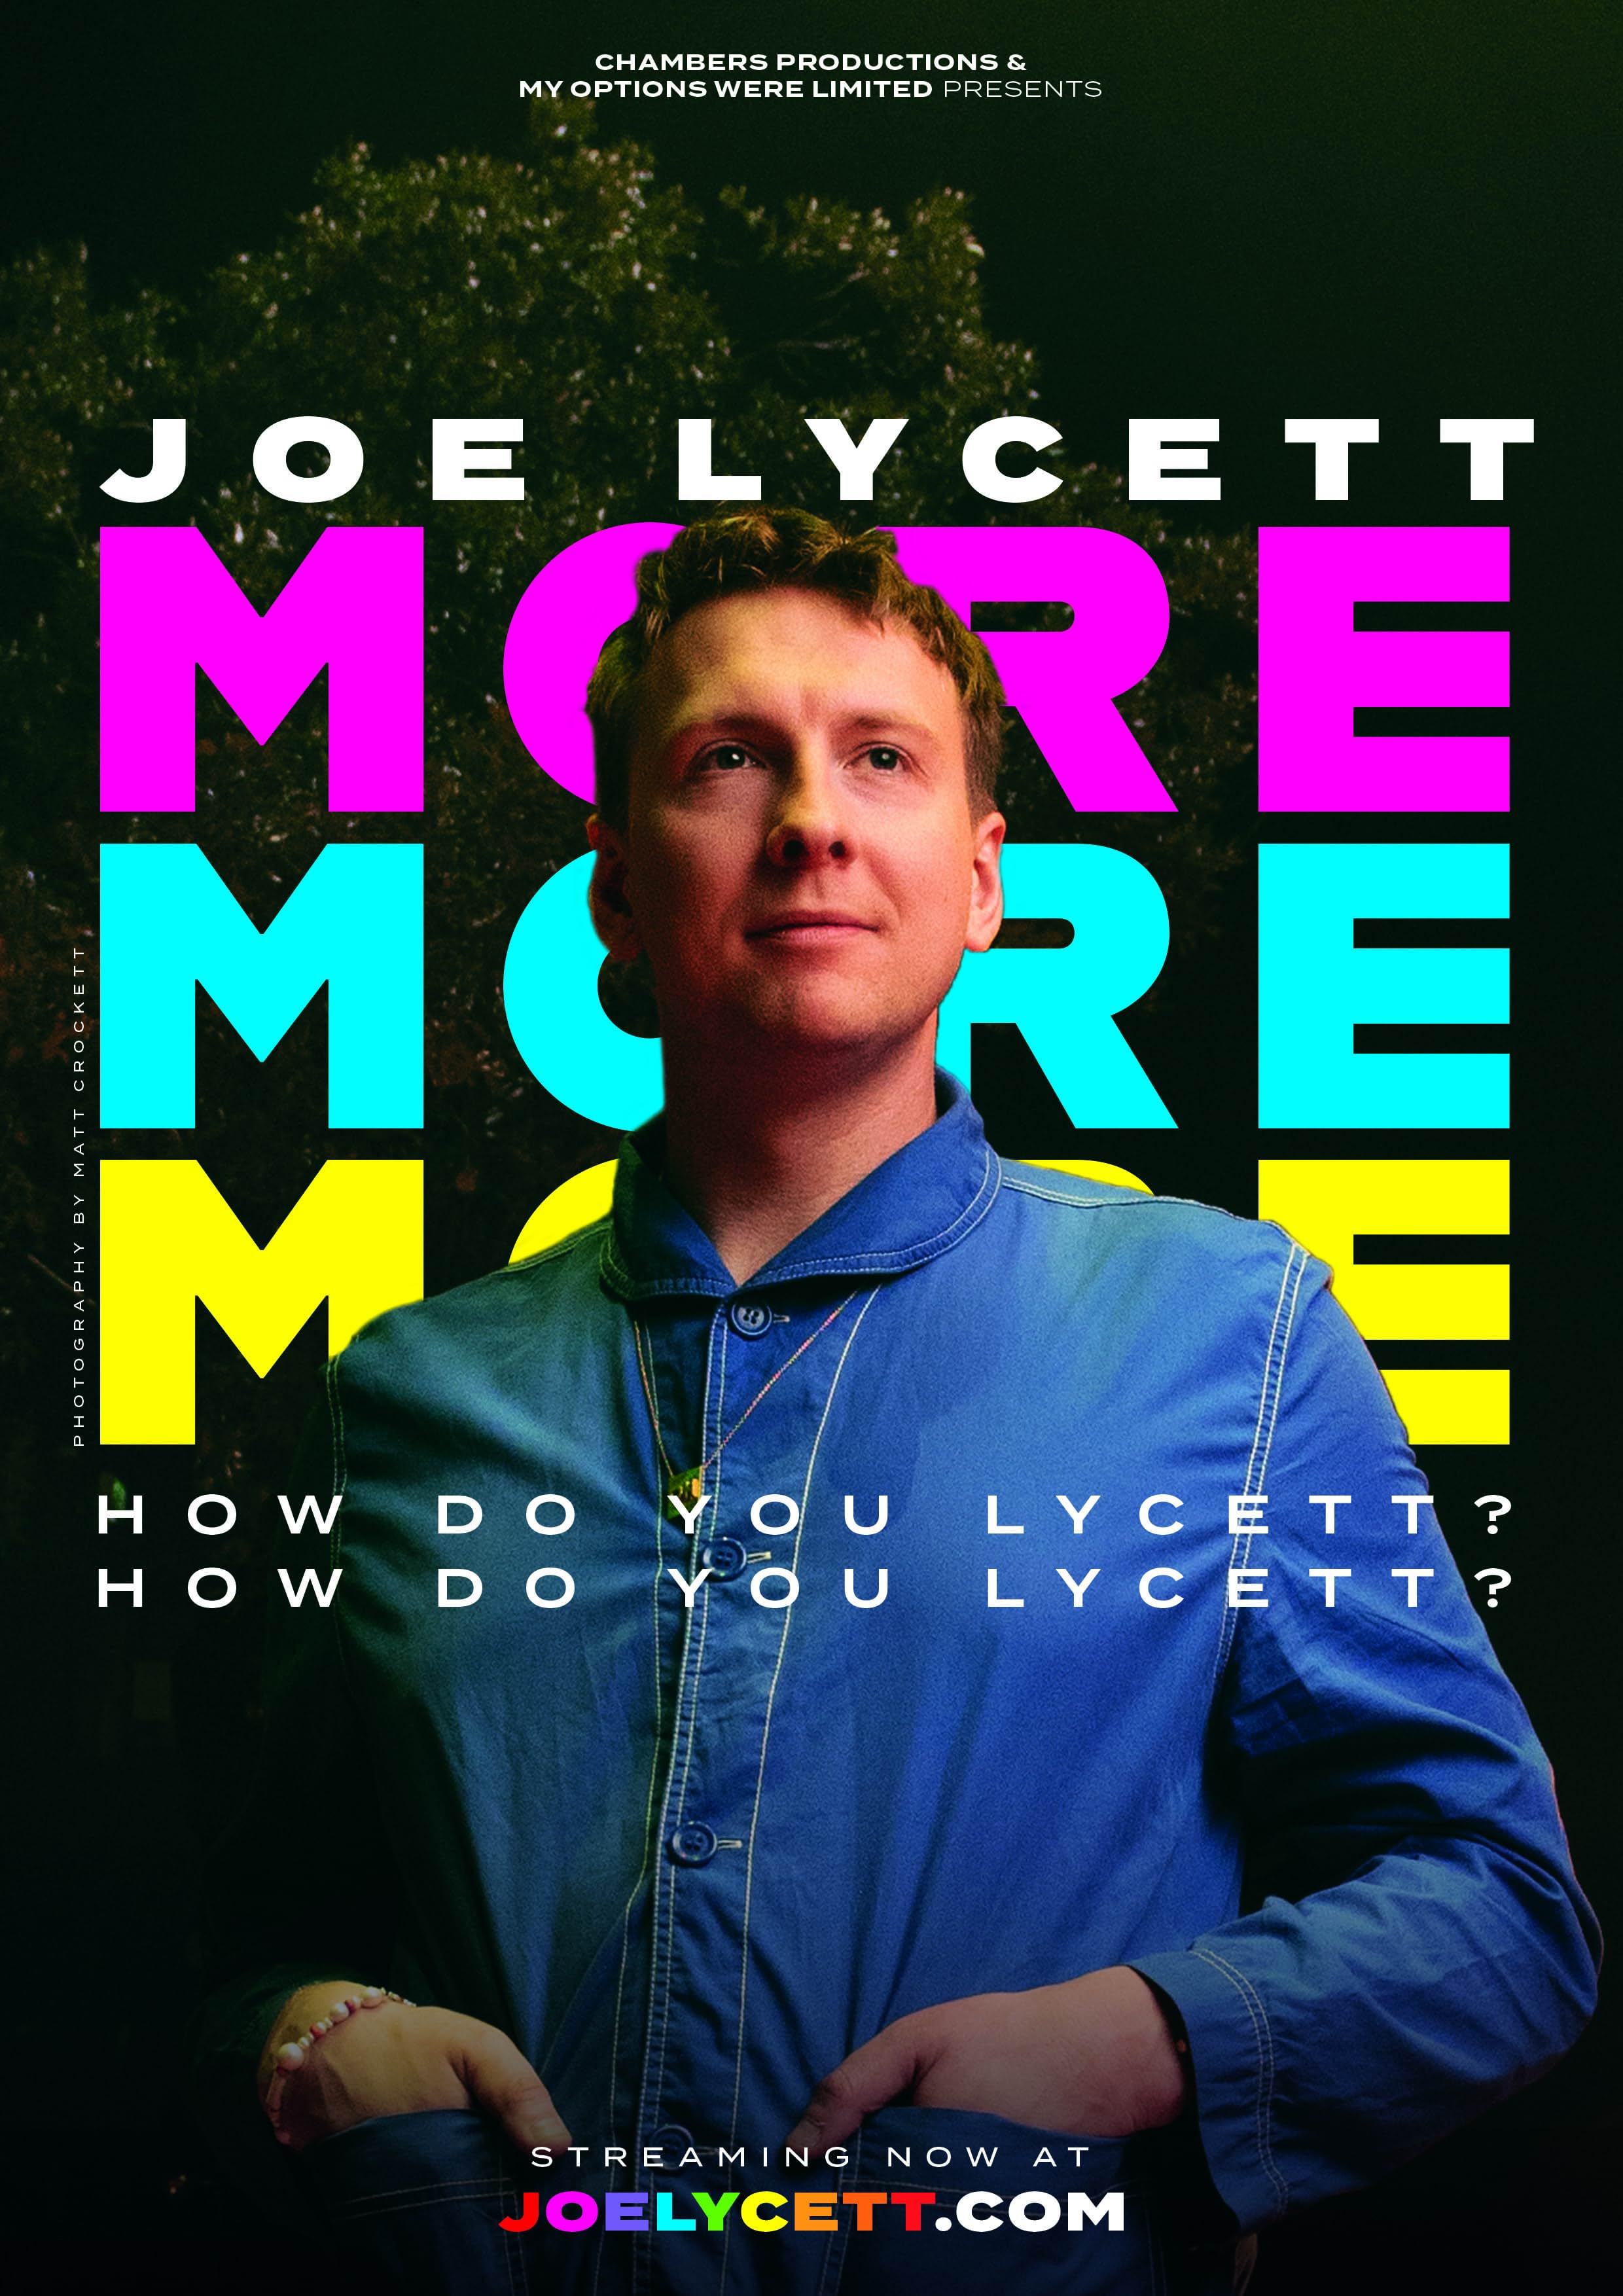     More, More, More! How Do You Lycett? How Do You Lycett?